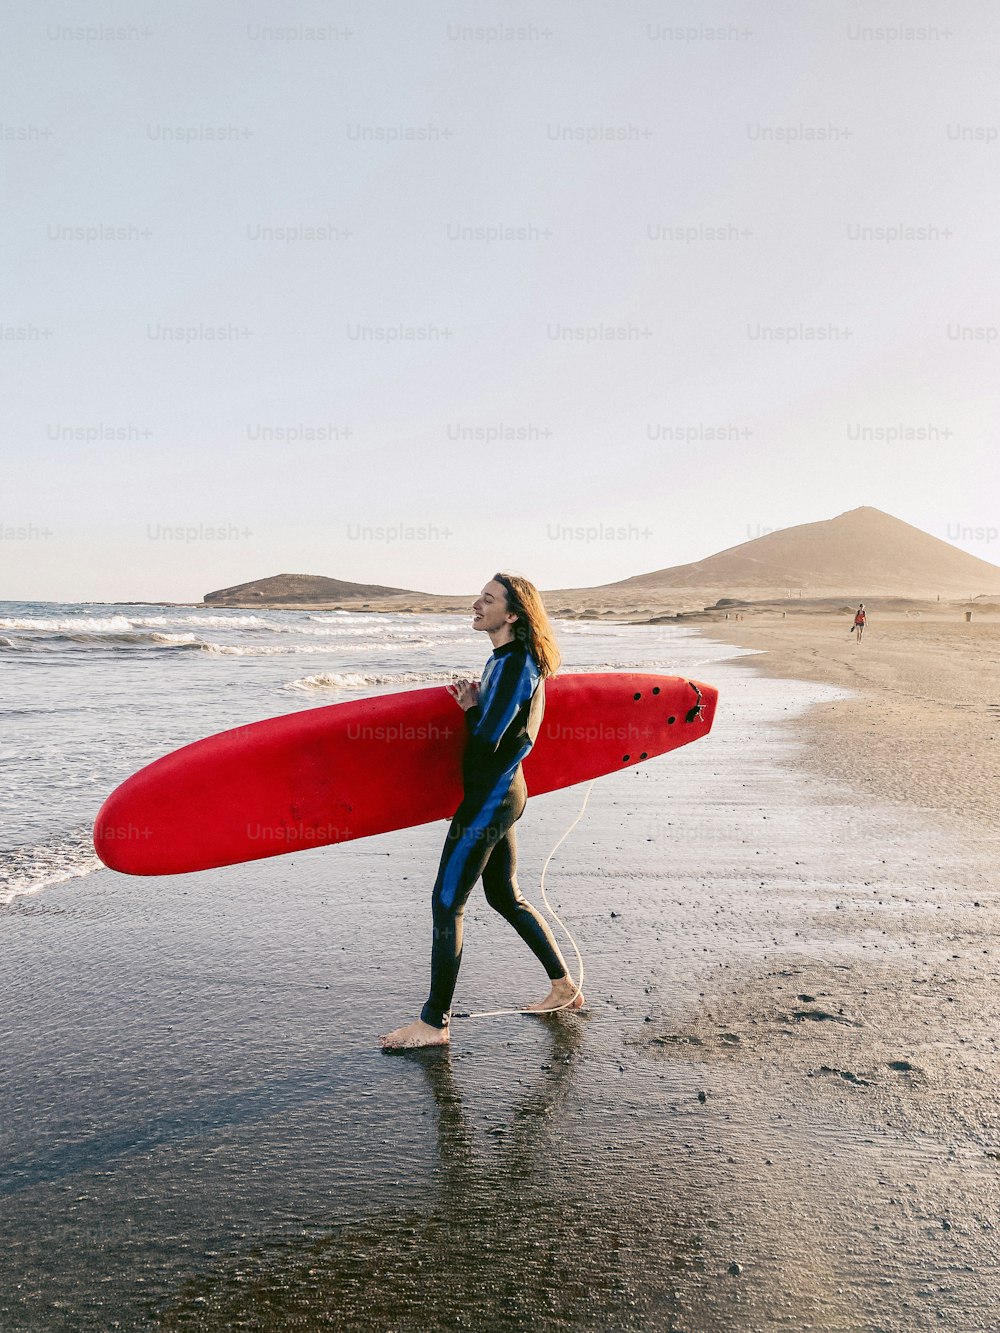 Joven surfista caminando con tabla de surf en la playa. Imagen realizada en el teléfono móvil